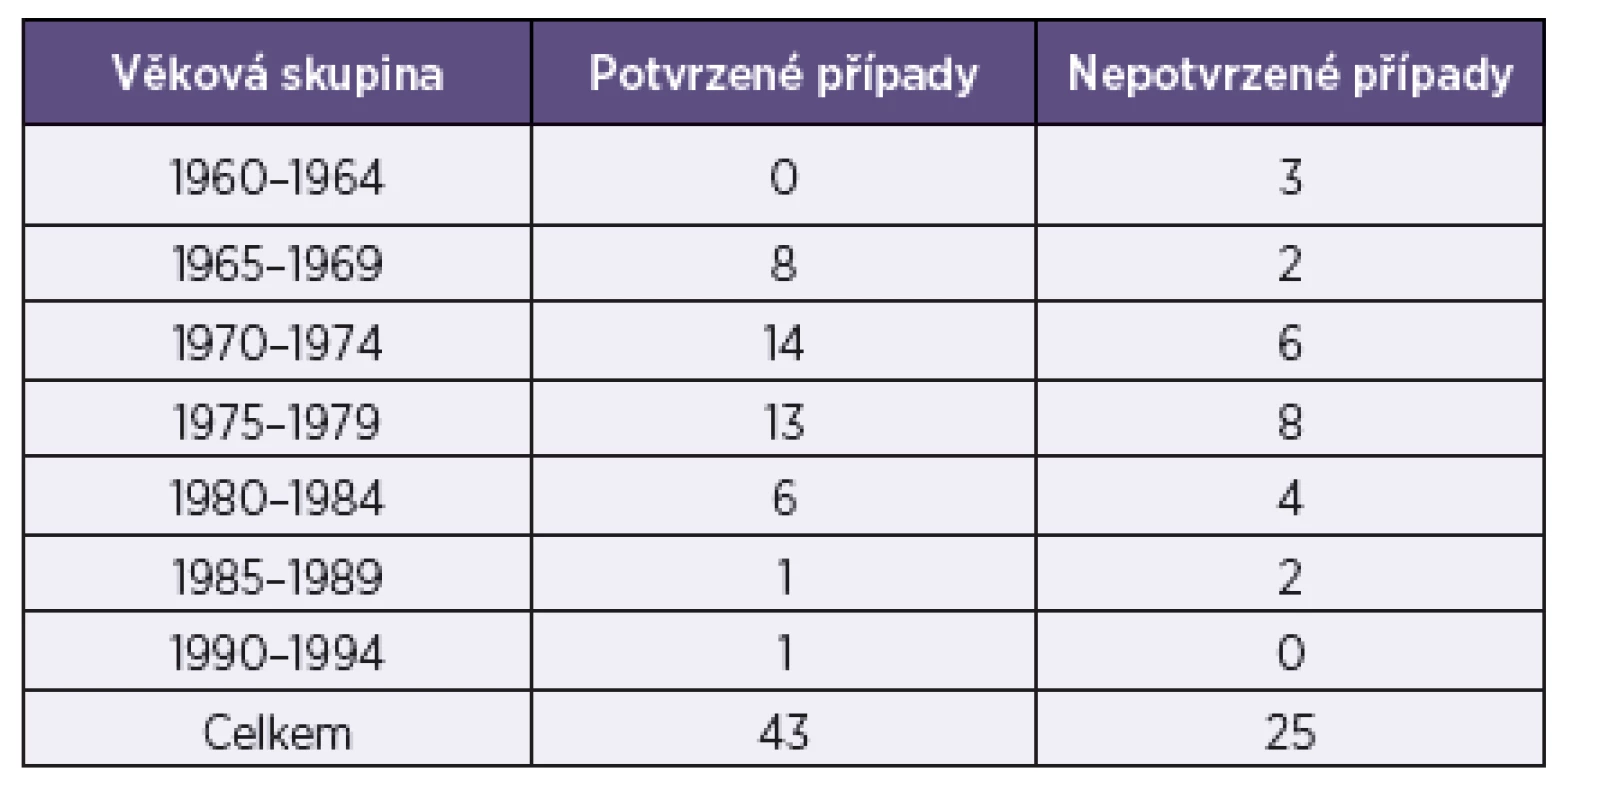 Věkové složení souboru zdravotníků onemocnělých spalničkami
Table 2. Age distribution of measles cases in healthcare workers